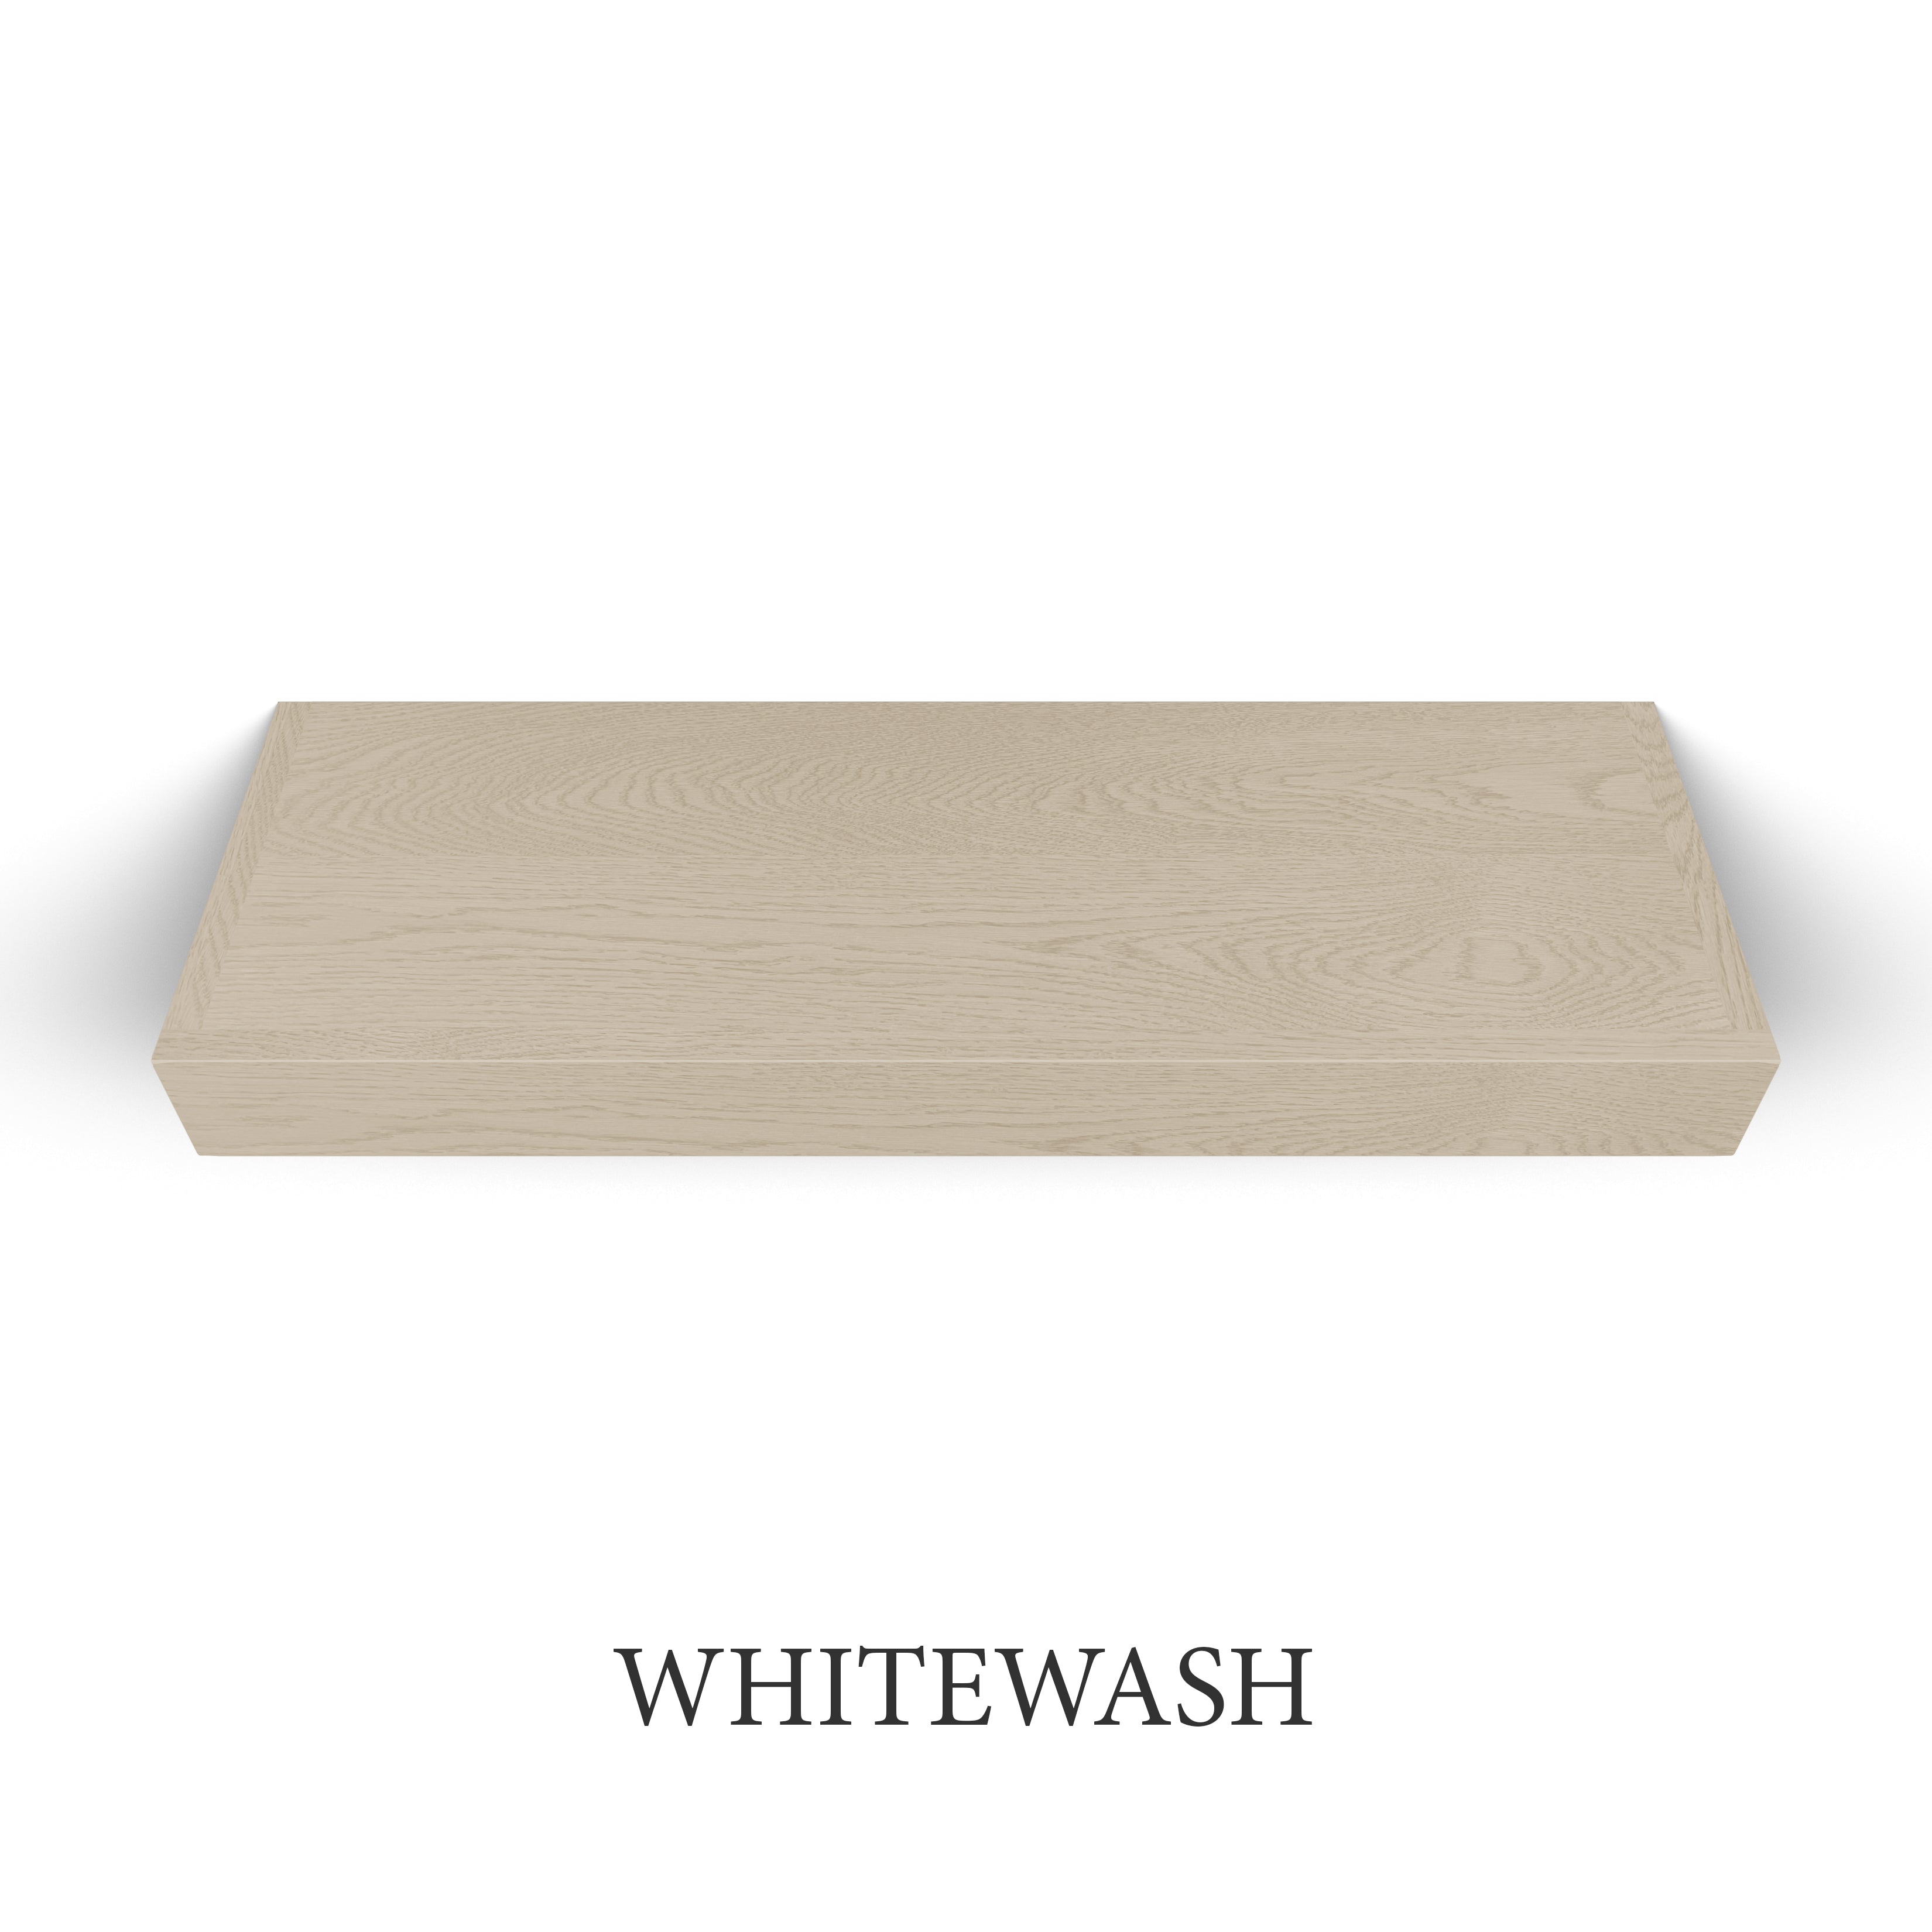 whitewash White Oak 3 Inch Thick LED Lighted Floating Shelf - Battery